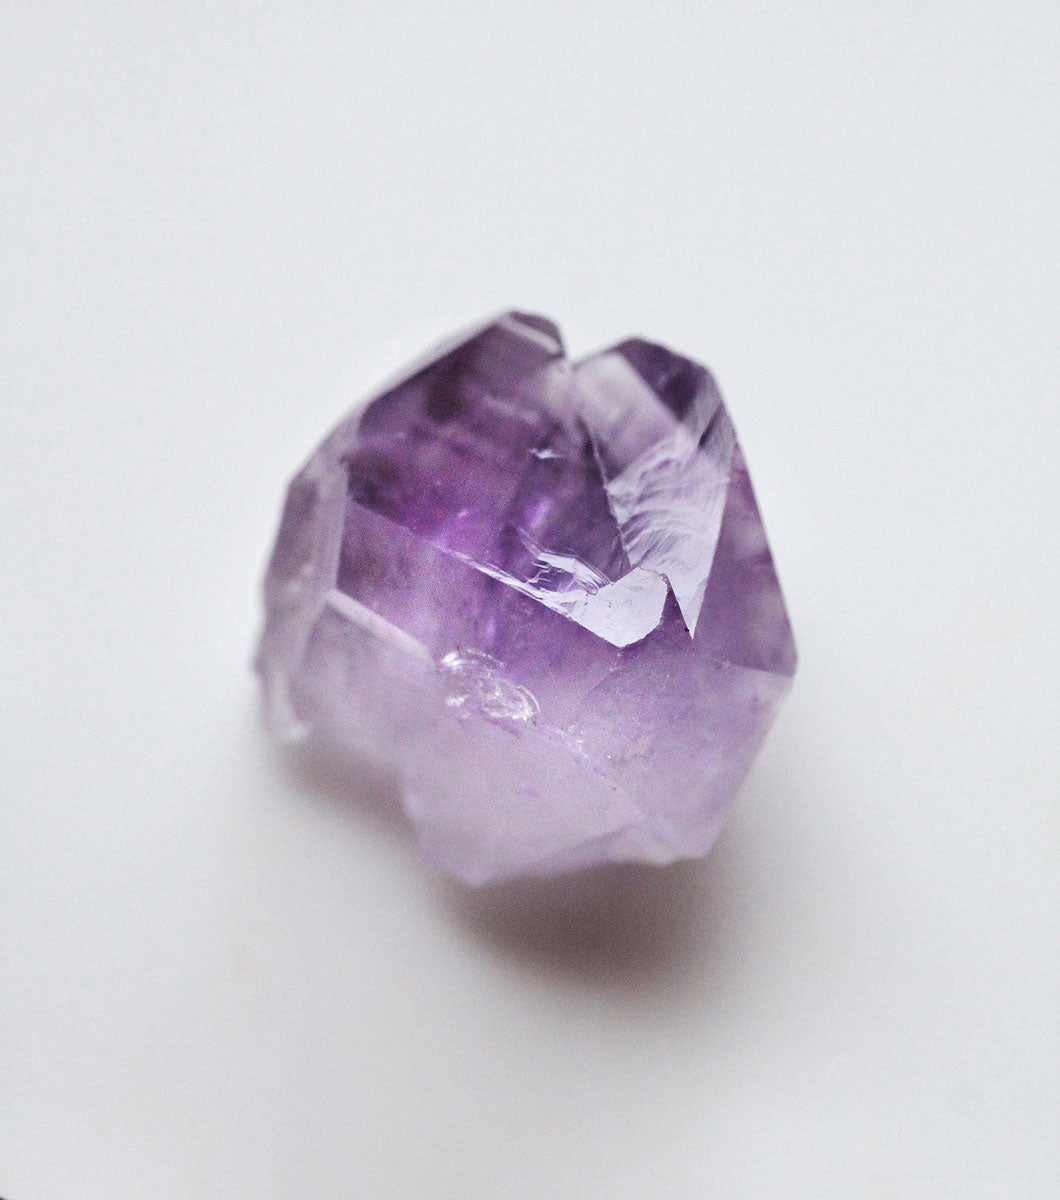 Rough amethyst crystal